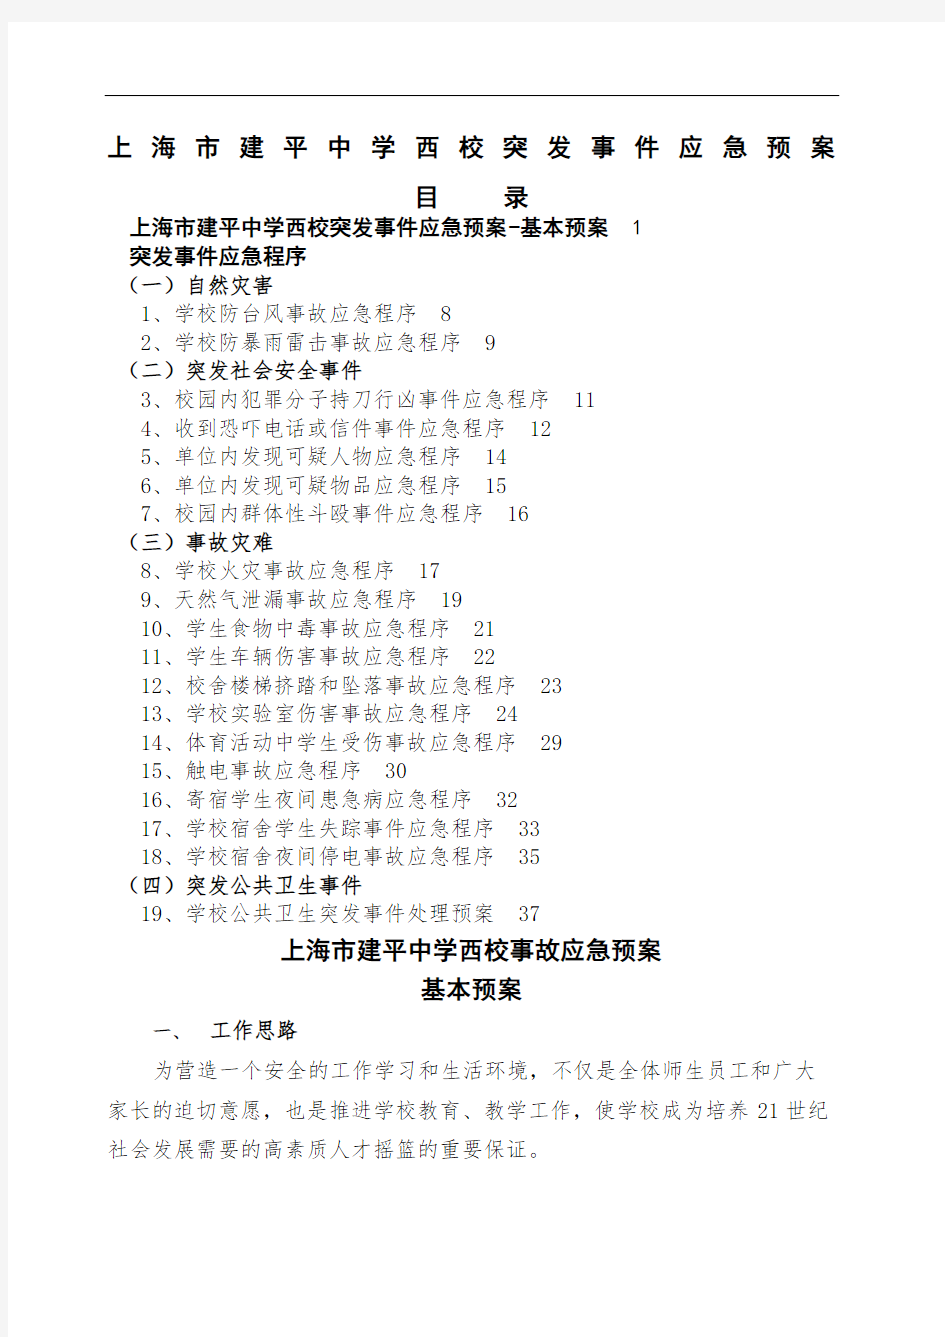 上海建平中学西校突发事件应急预案